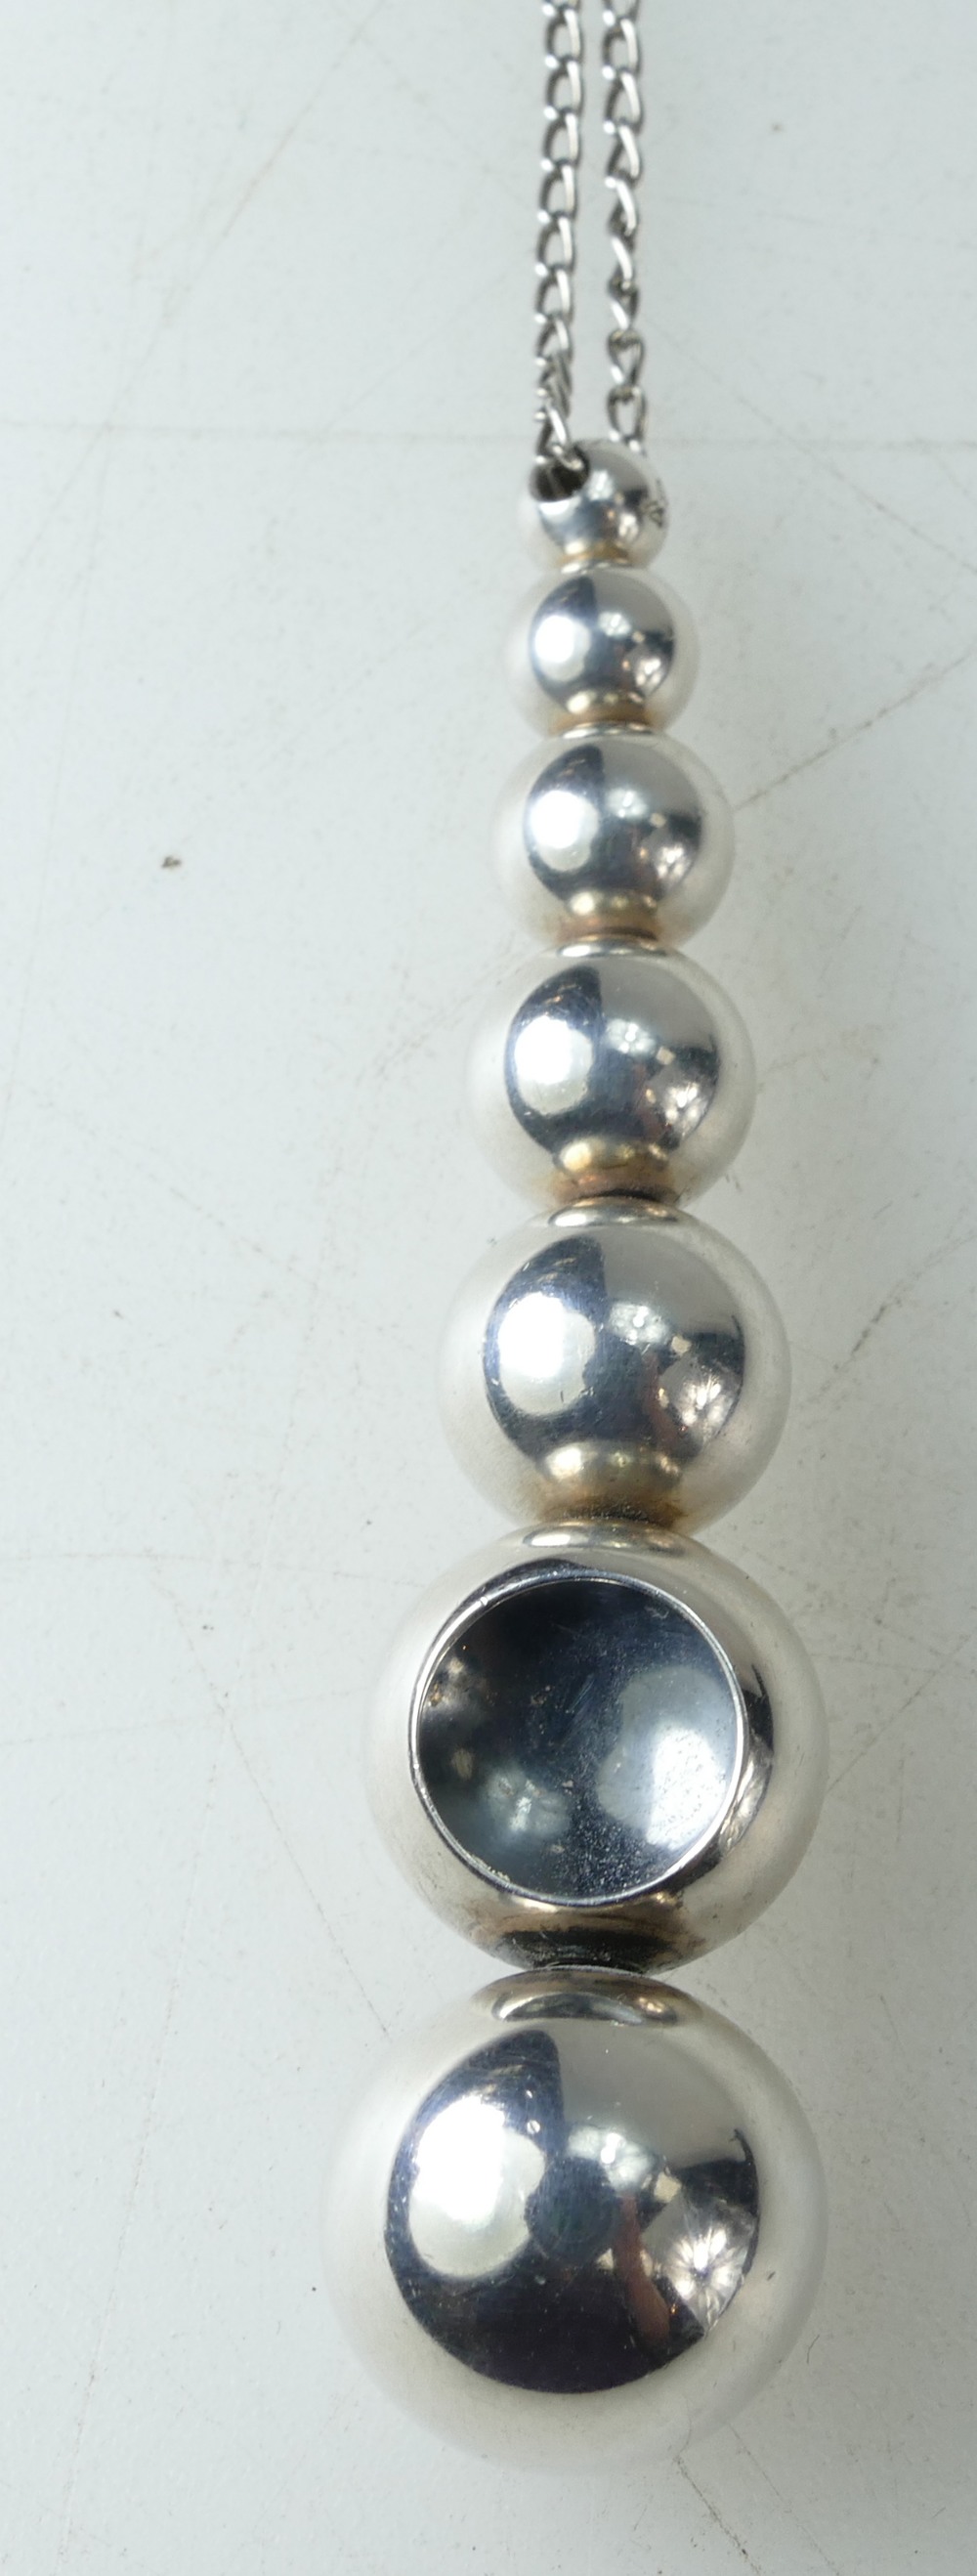 GEORG JENSEN 'CAVE' pendant and chain.17.2g. Chain length 50cm approx. Pendant drop 6.1cm. - Bild 2 aus 3